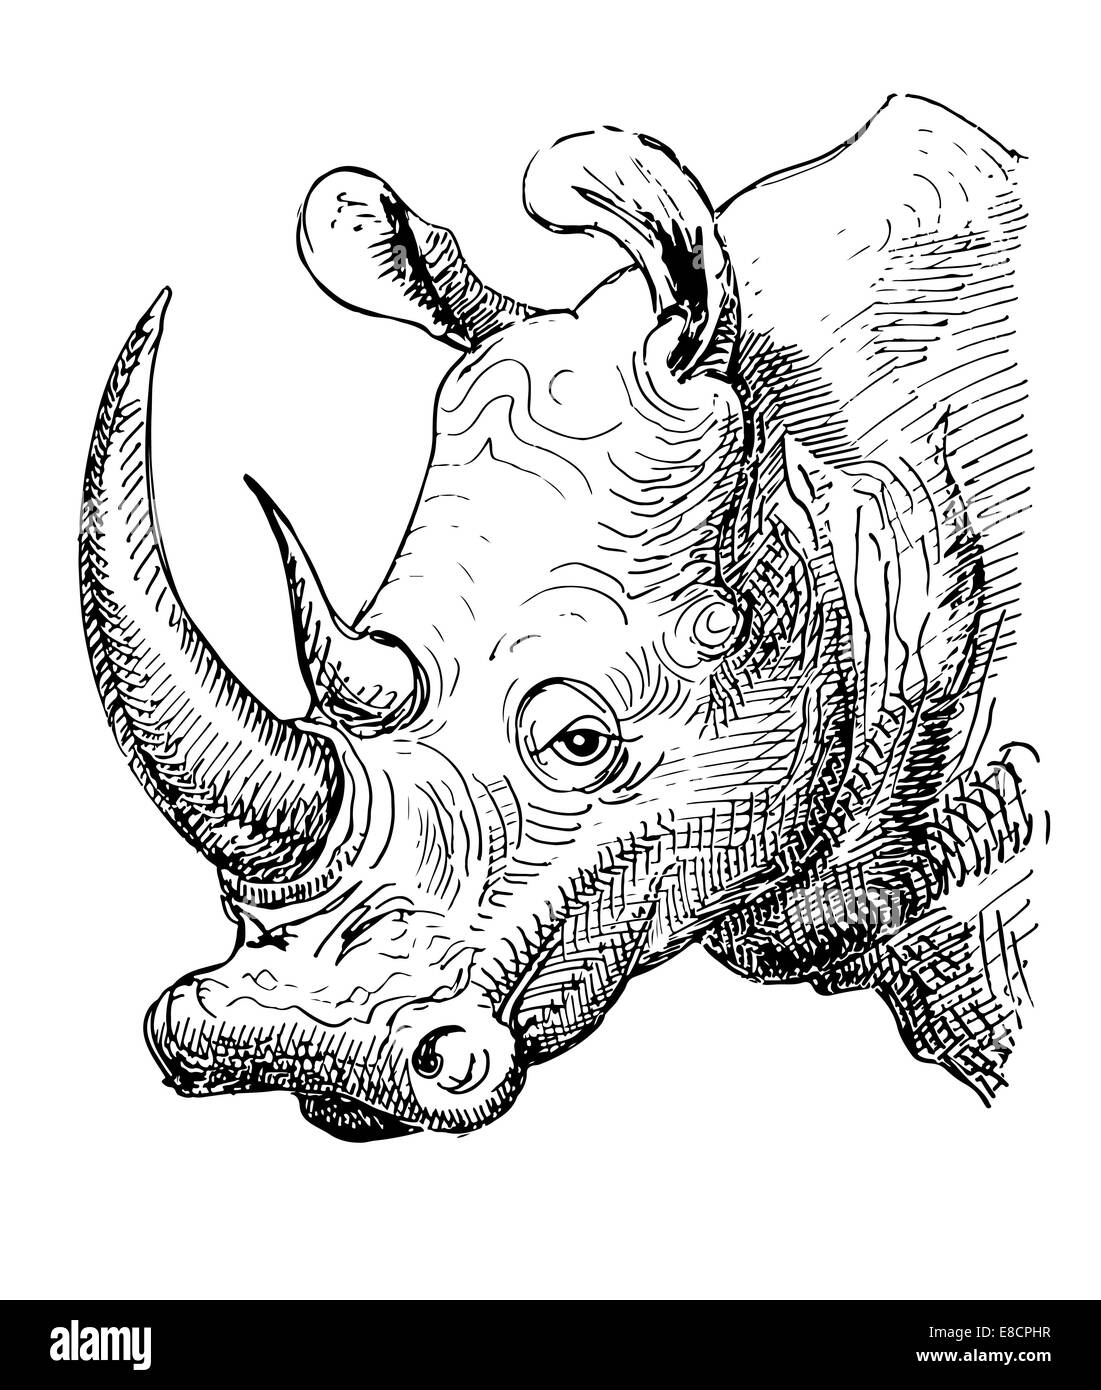 Rinoceronte dibujo Imágenes de stock en blanco y negro - Alamy